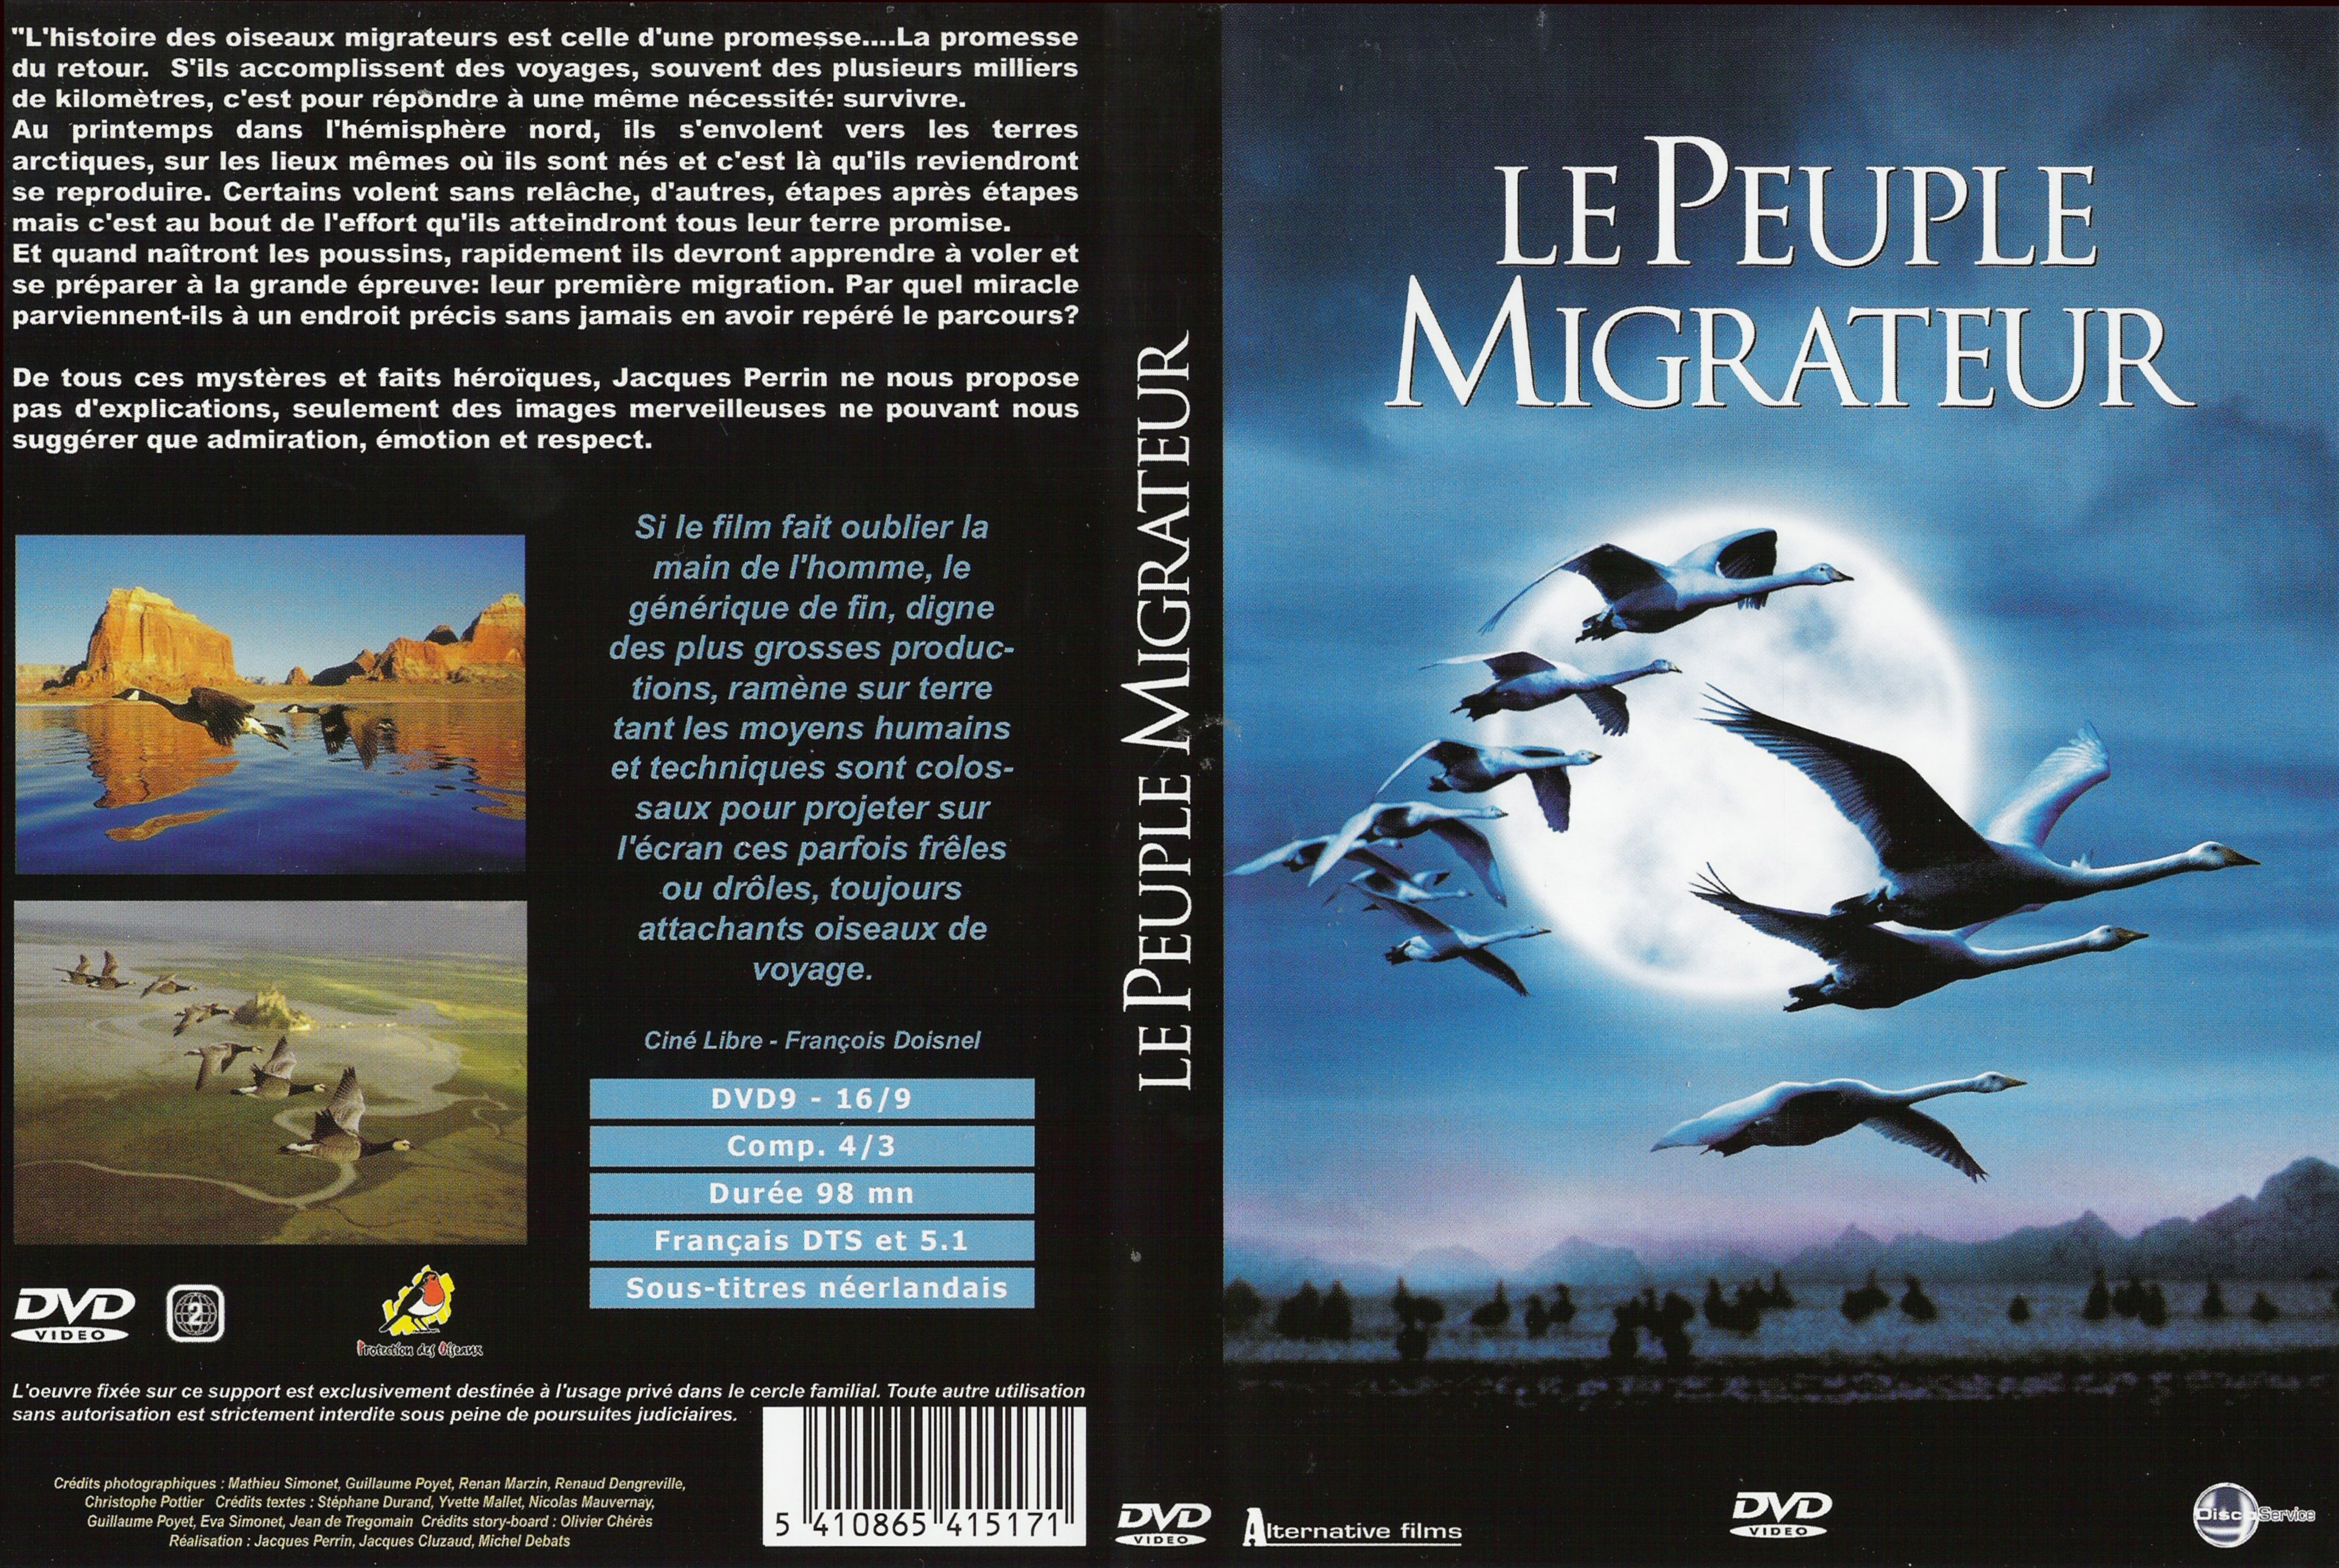 Jaquette DVD Le peuple migrateur v2